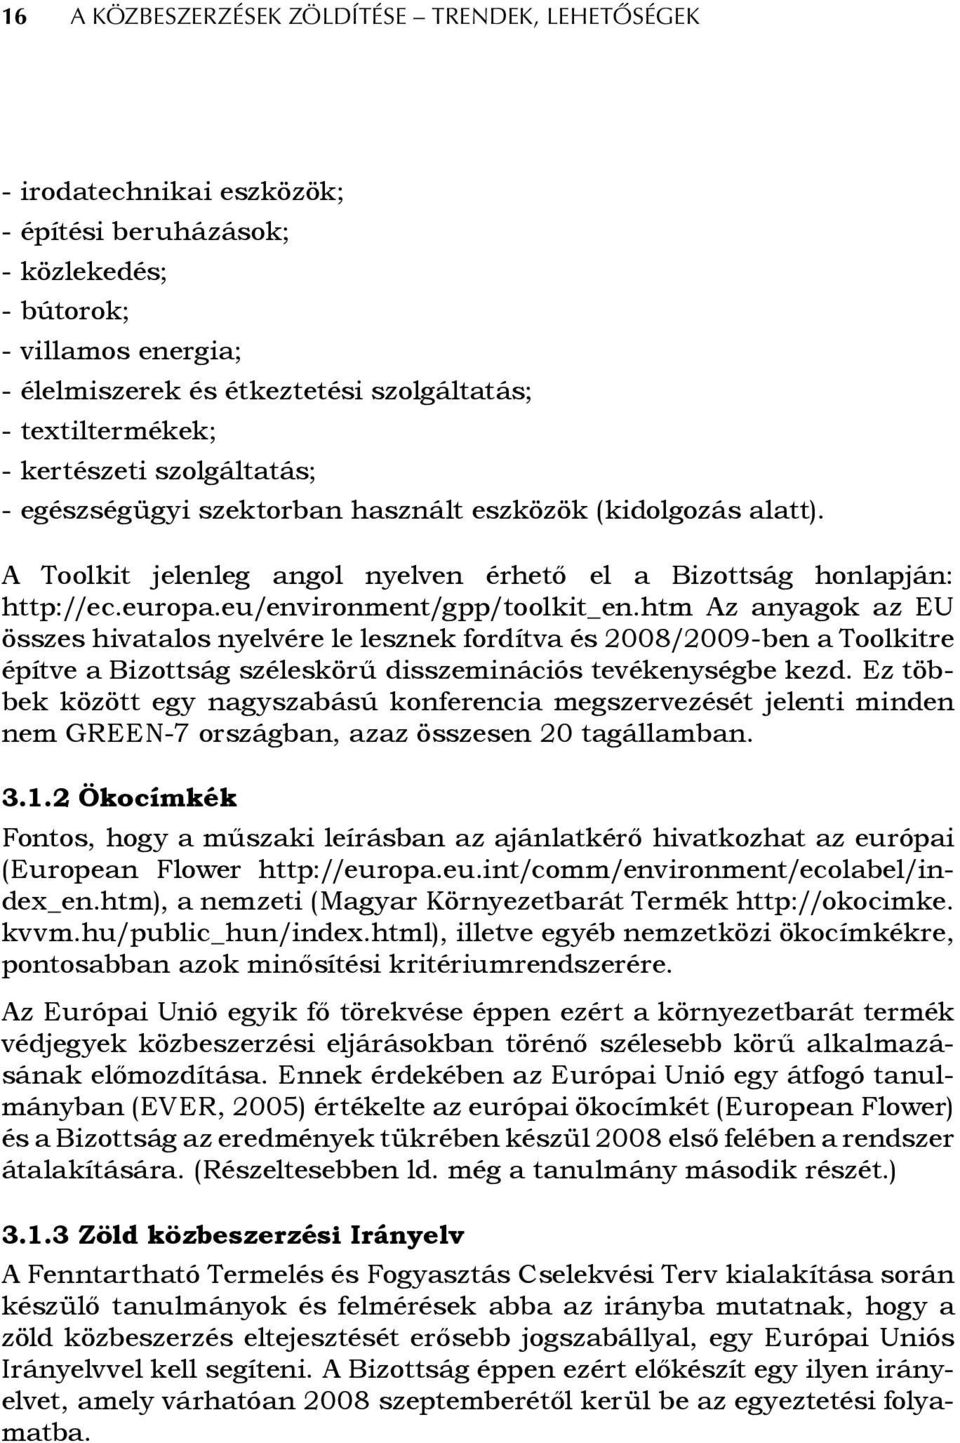 eu/environment/gpp/toolkit_en.htm Az anyagok az EU összes hivatalos nyelvére le lesznek fordítva és 2008/2009-ben a Toolkitre építve a Bizottság széleskörű disszeminációs tevékenységbe kezd.